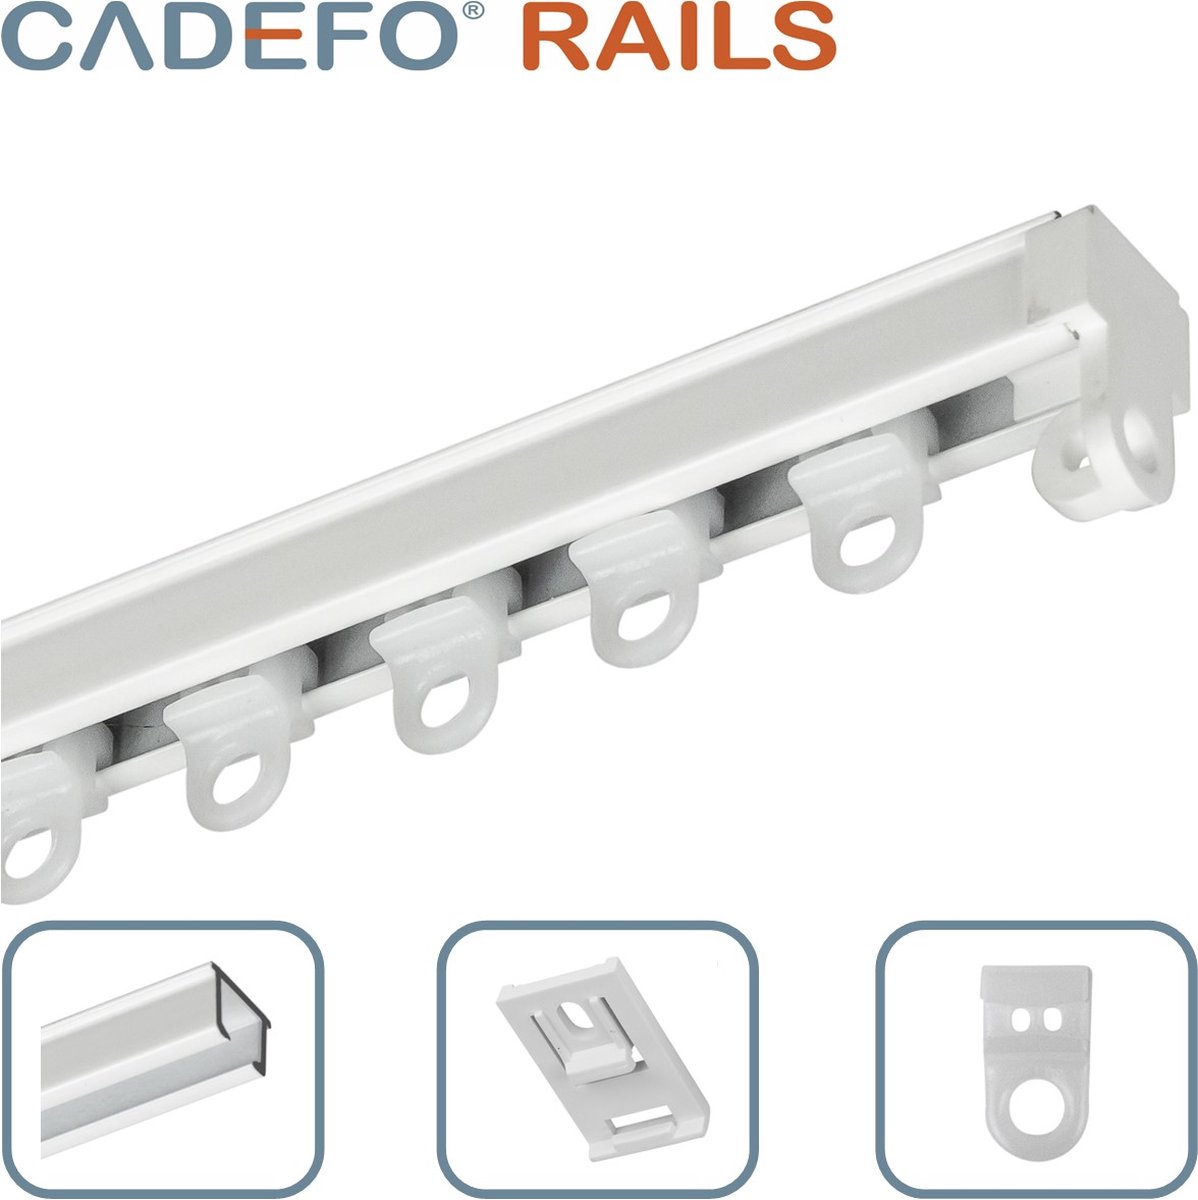 CADEFO RAILS (251 - 300 cm) Gordijnrails - Compleet op maat! - UIT 1 STUK - Leverbaar tot 6 meter - Plafondbevestiging - Lengte 283 cm